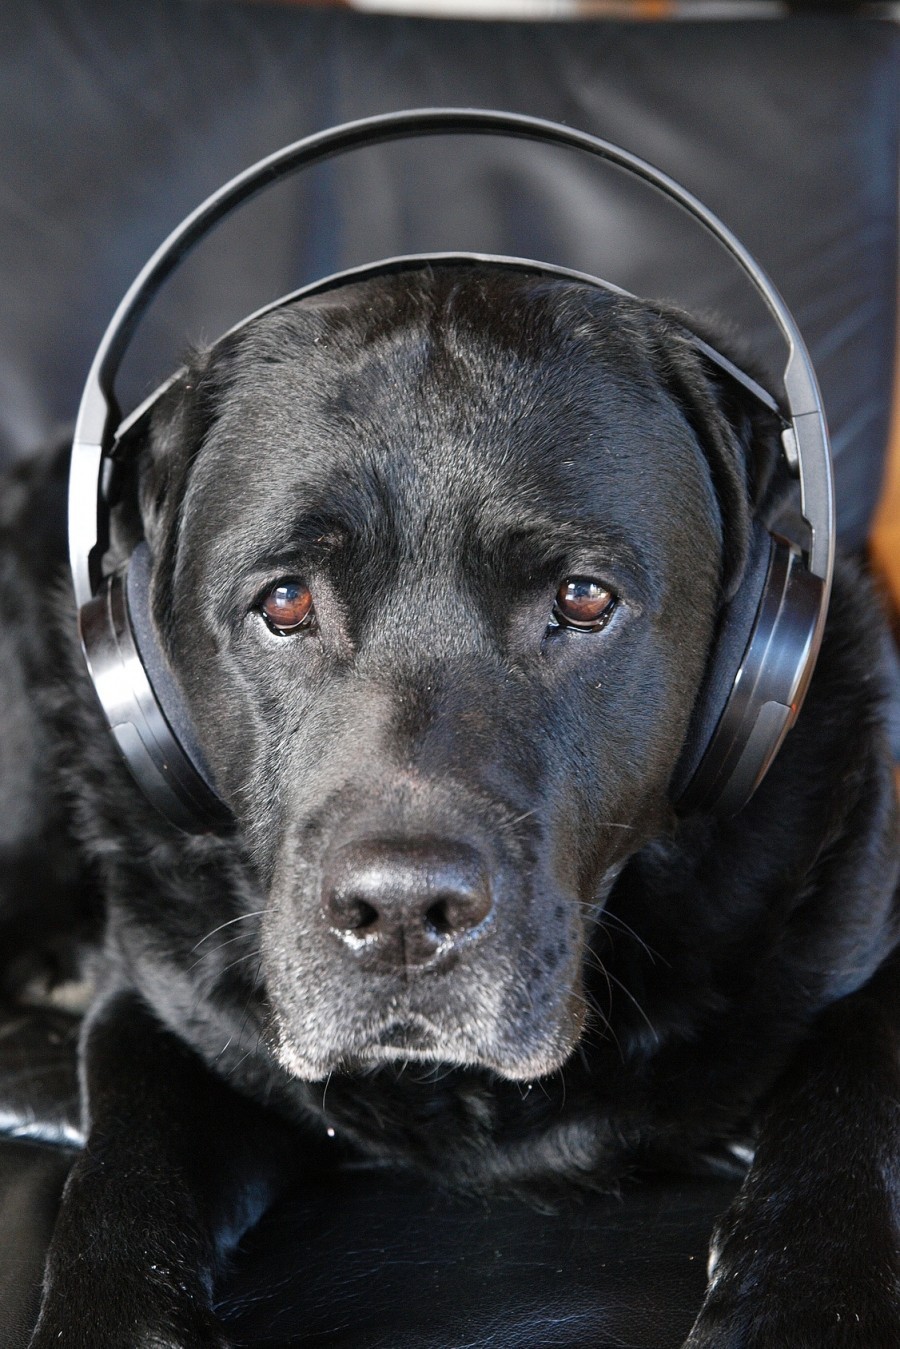 Silvester bedeutet für viele Hunde Stress, weil sie auf den teilweise enormen Lärmpegel mit lautem Heulen usw. reagieren. Wie kann man Hunde vorbereiten?